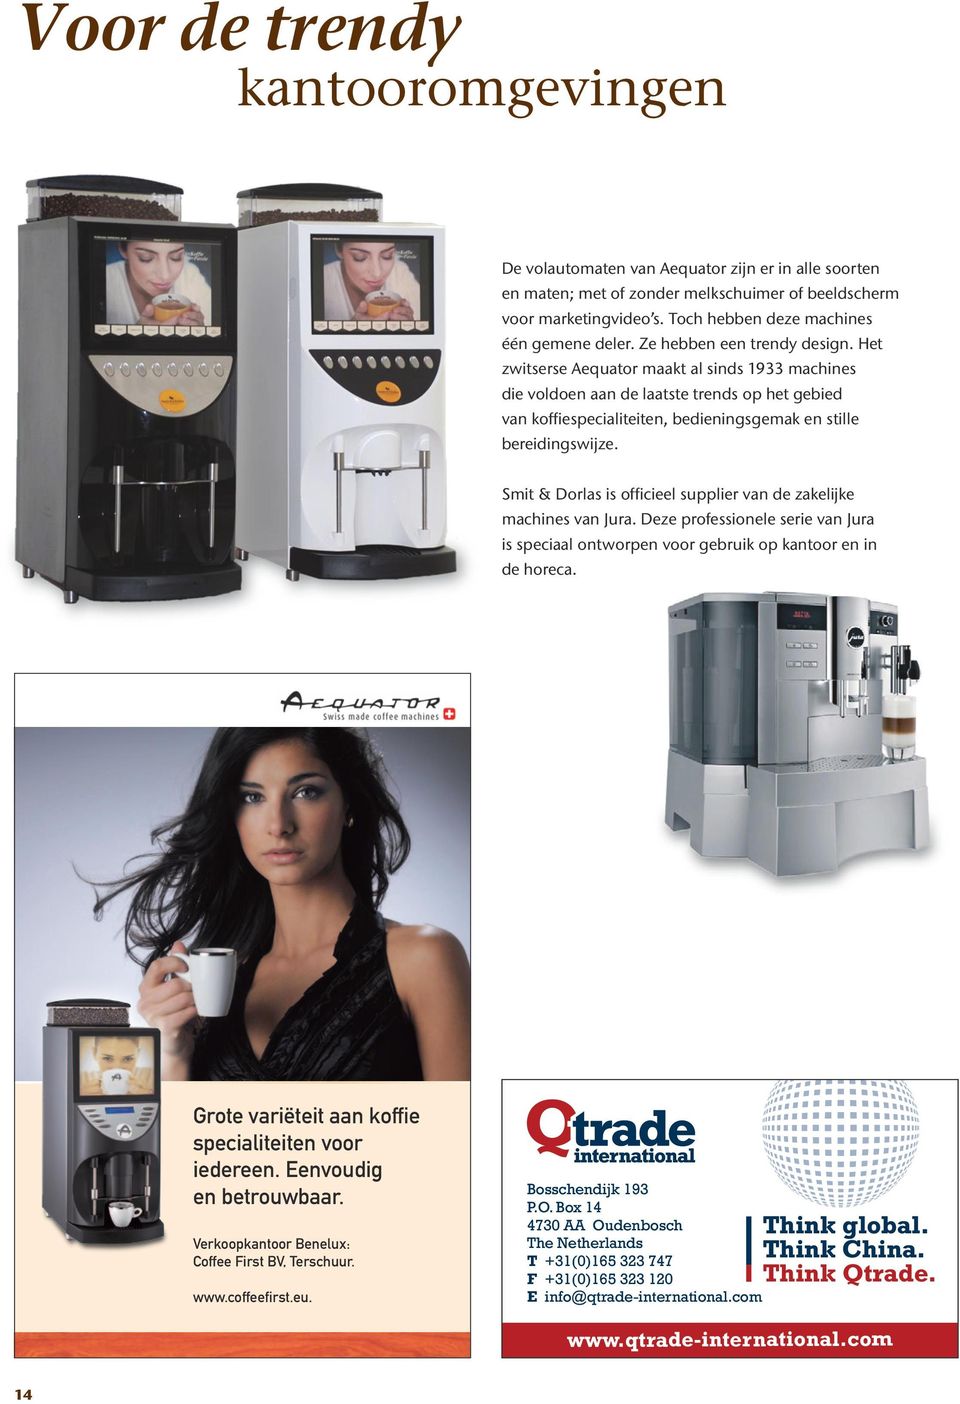 Het zwitserse Aequator maakt al sinds 1933 machines die voldoen aan de laatste trends op het gebied van koffiespecialiteiten, bedieningsgemak en stille bereidingswijze.